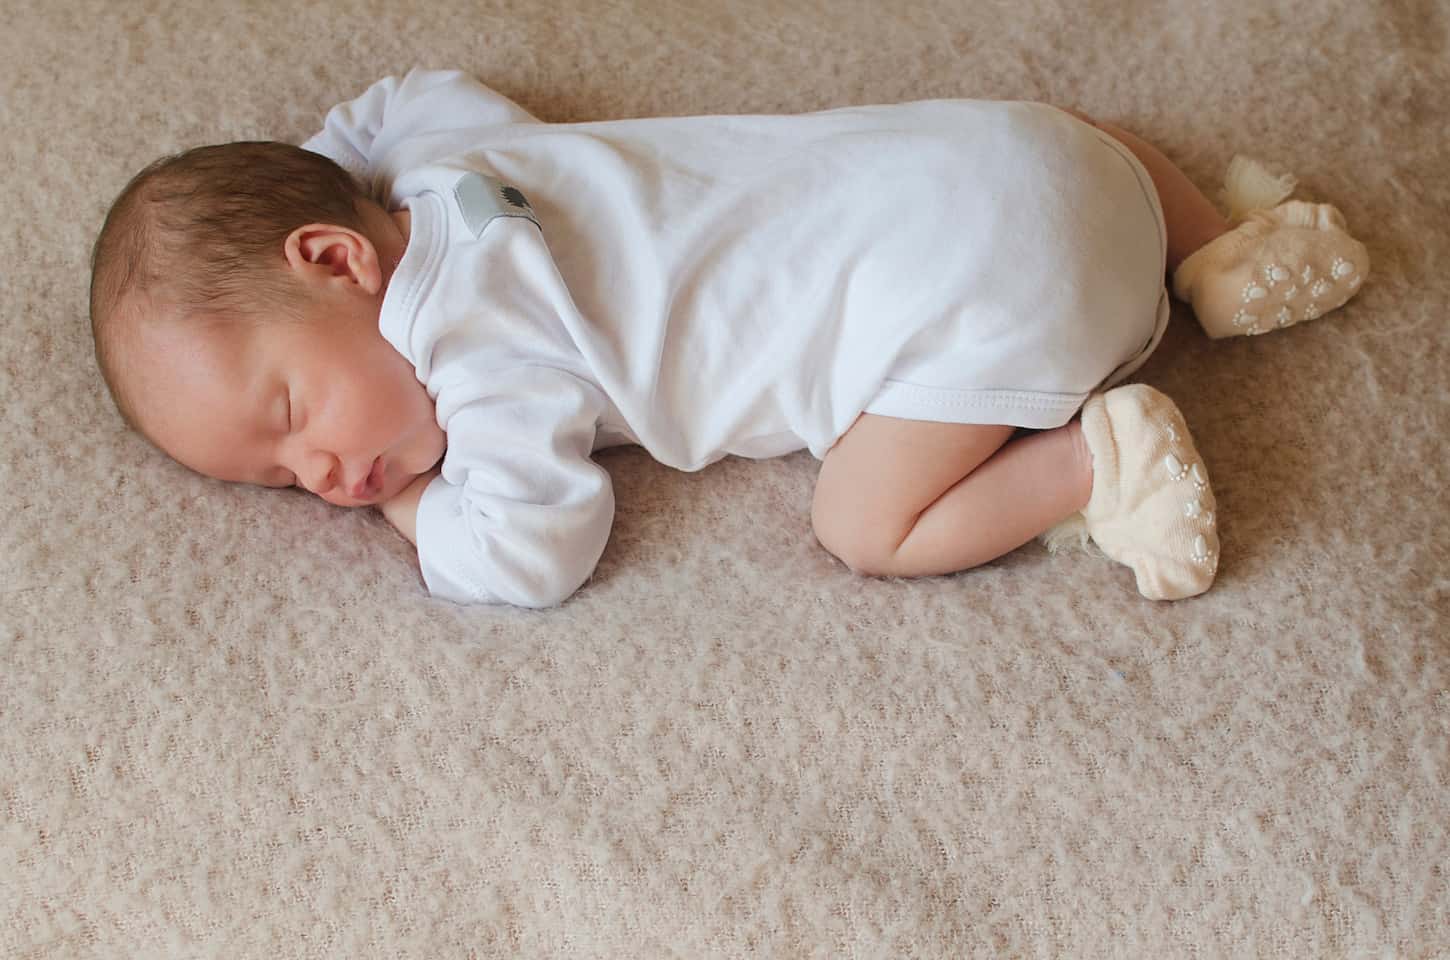 Can Baby Wear Socks While Sleeping?